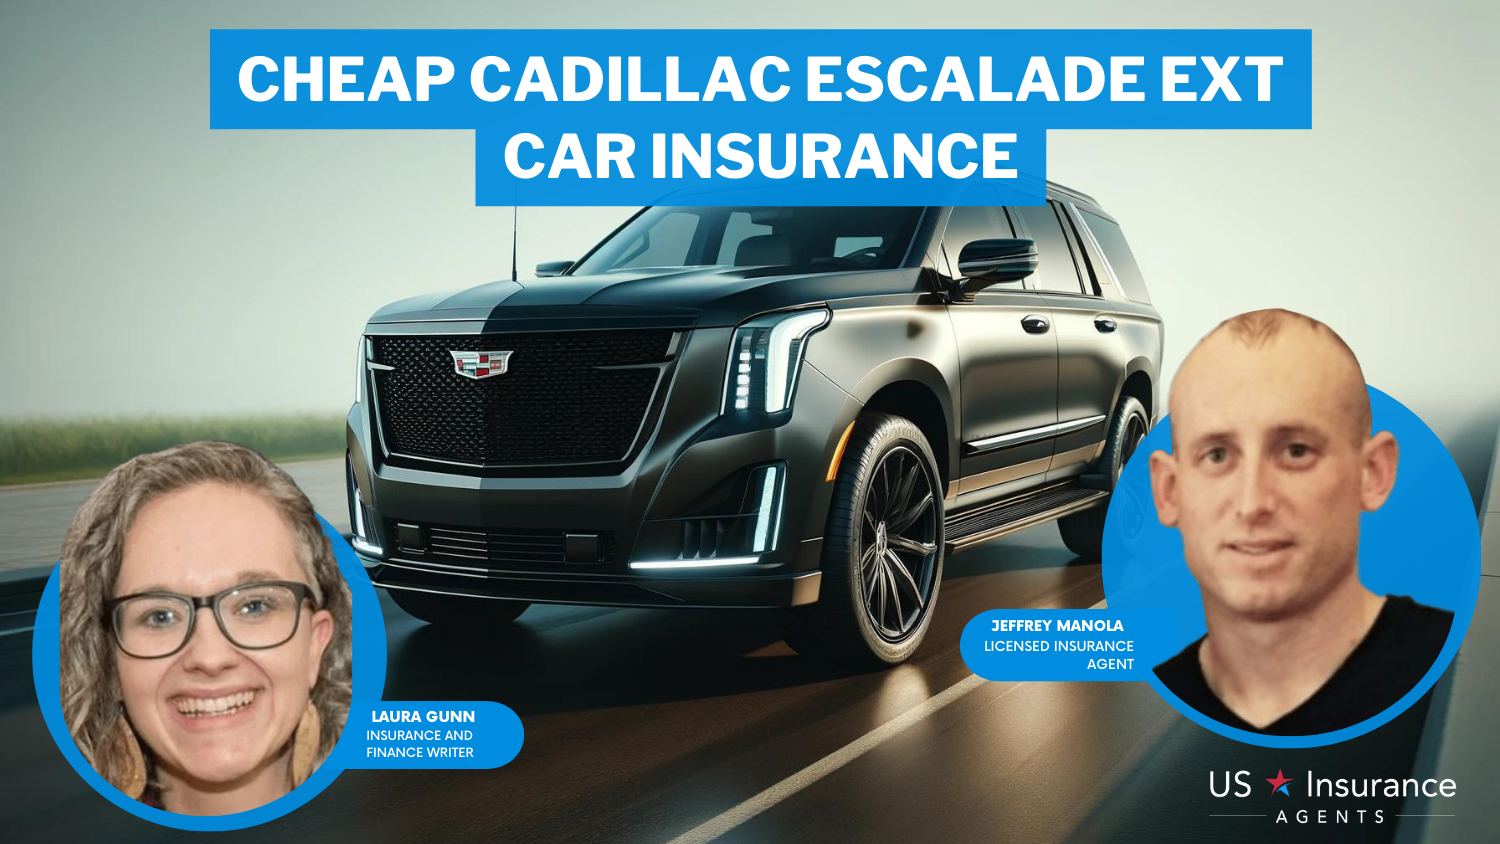 Erie, MetLife, and Safeco: Cheap Cadillac Escalade EXT Car Insurance